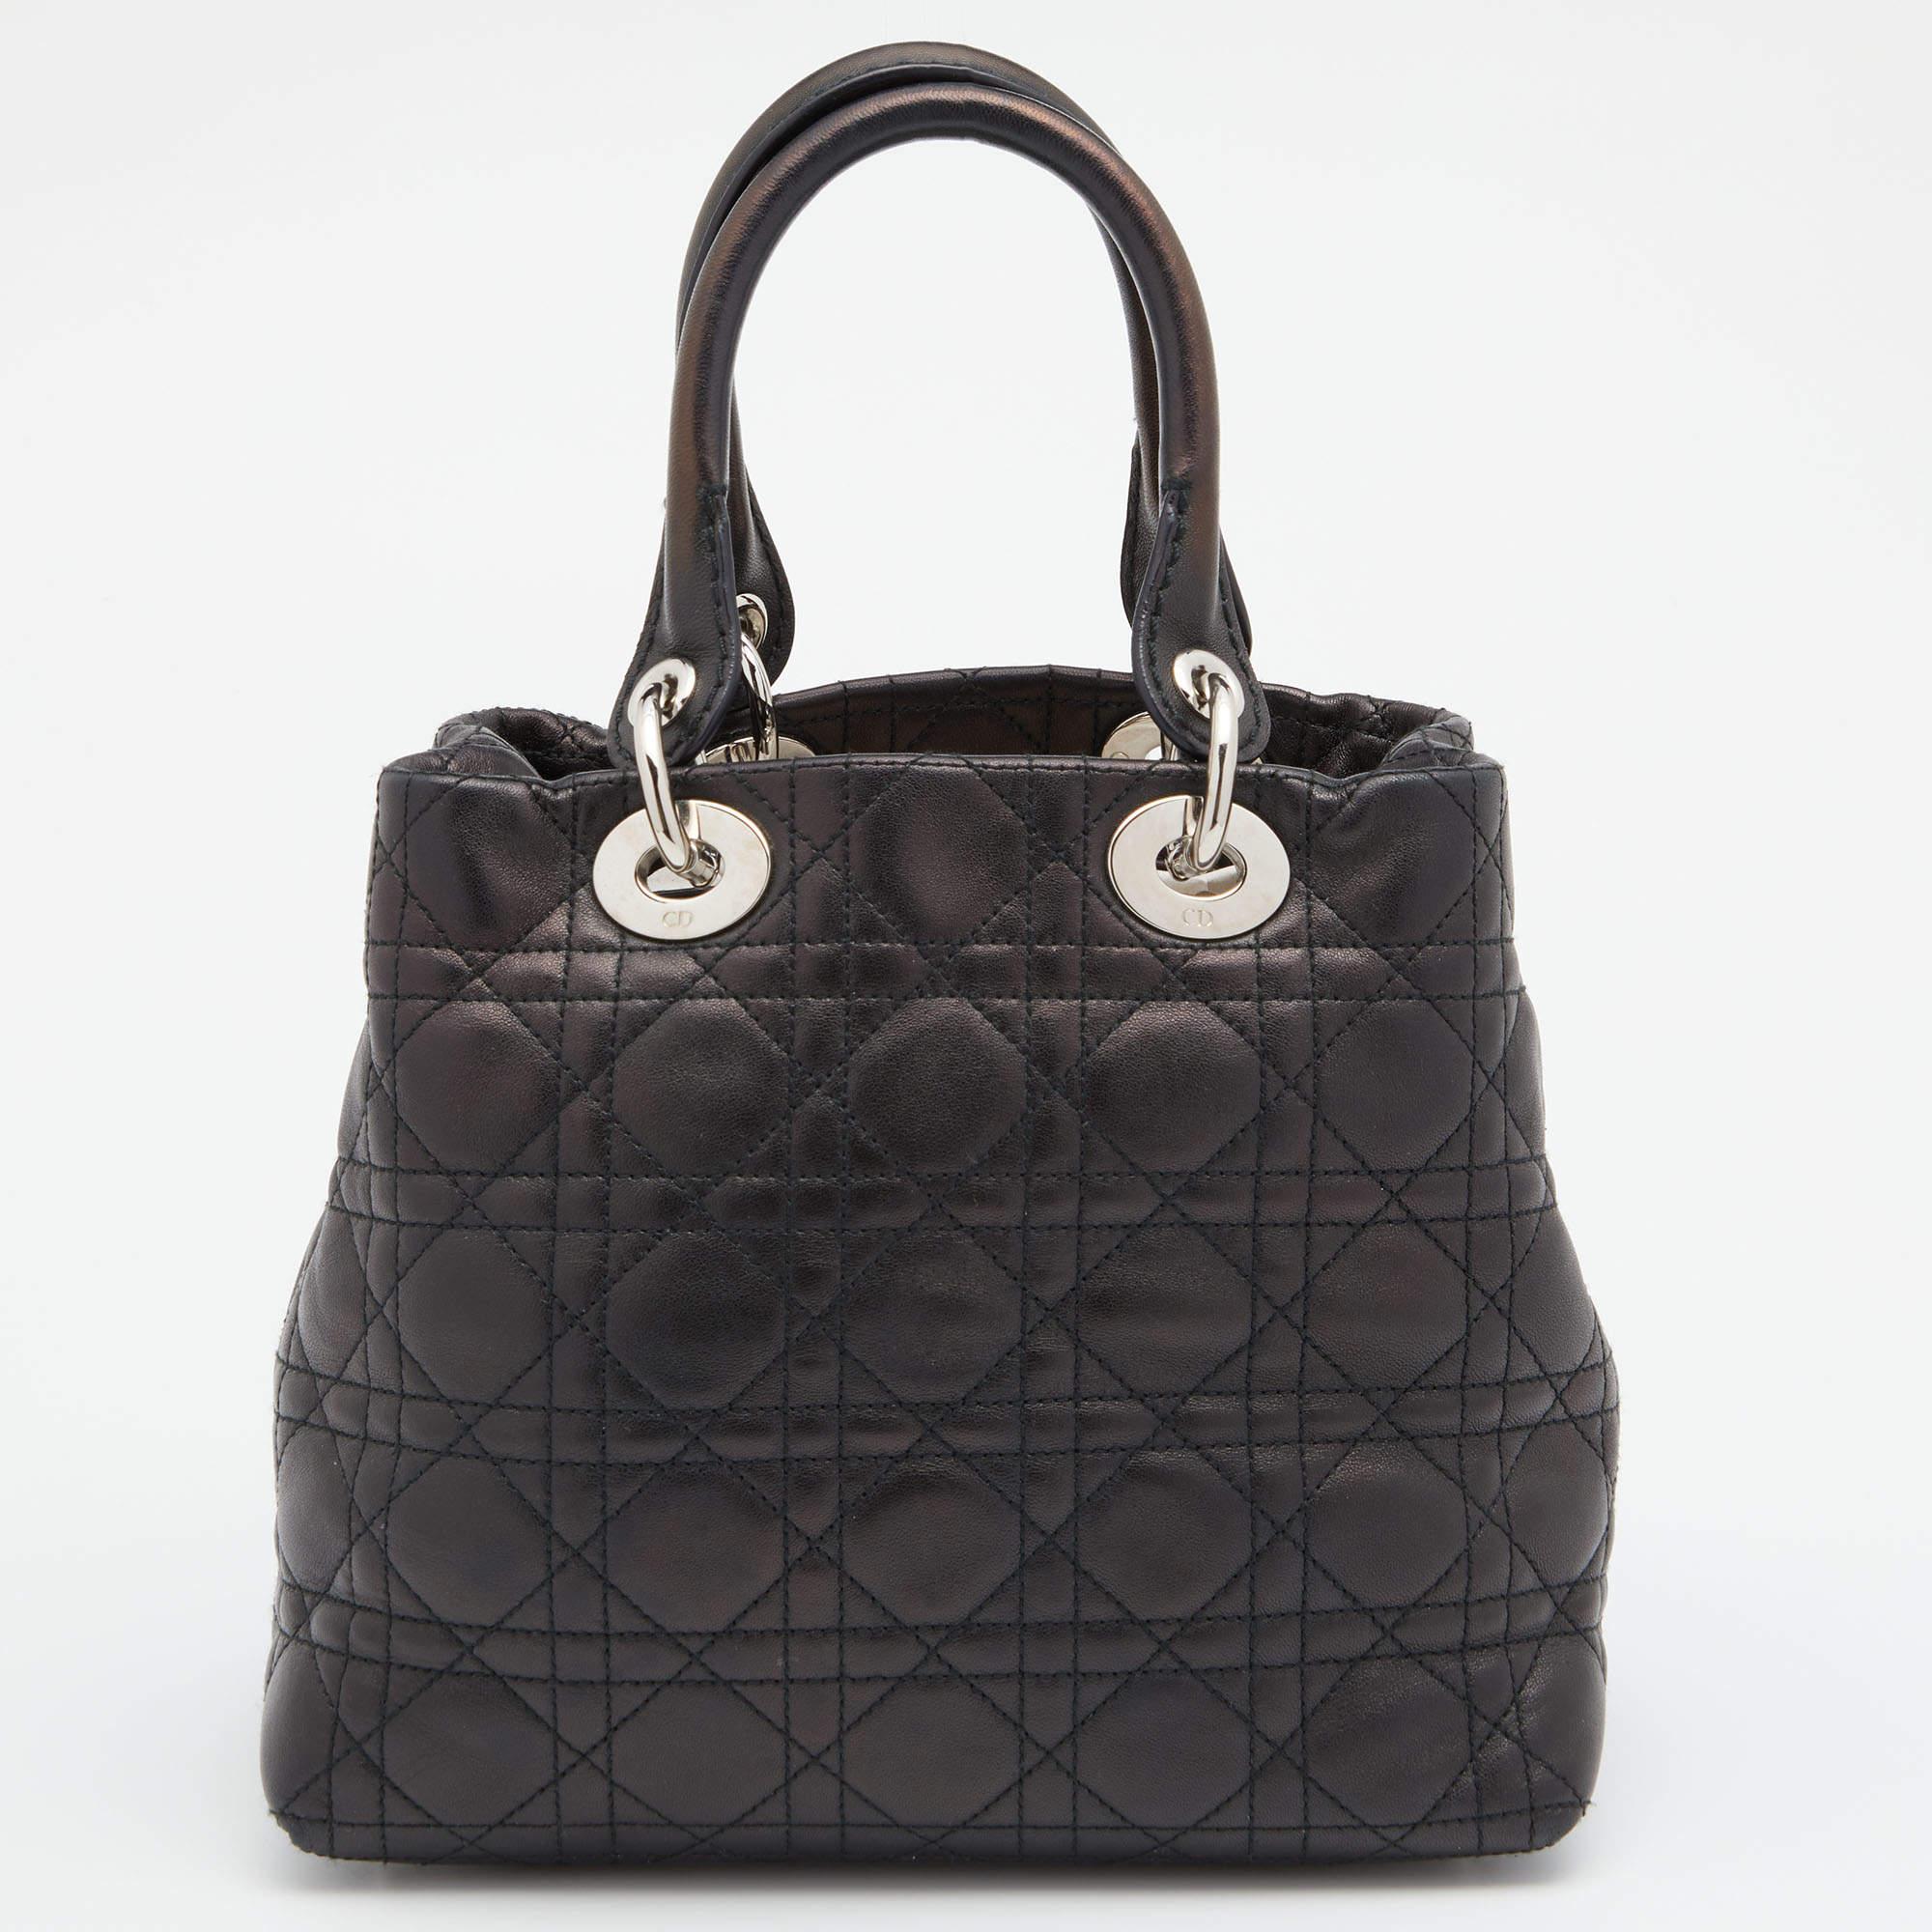 Ein zeitloser Status und ein großartiges Design kennzeichnen die Lady Dior-Tasche. Es ist eine ikonische Tasche, in die die Menschen bis heute investieren. Wir haben hier diese weiche Lady Dior-Tasche aus schwarzem Cannage-Leder in einem lässigen